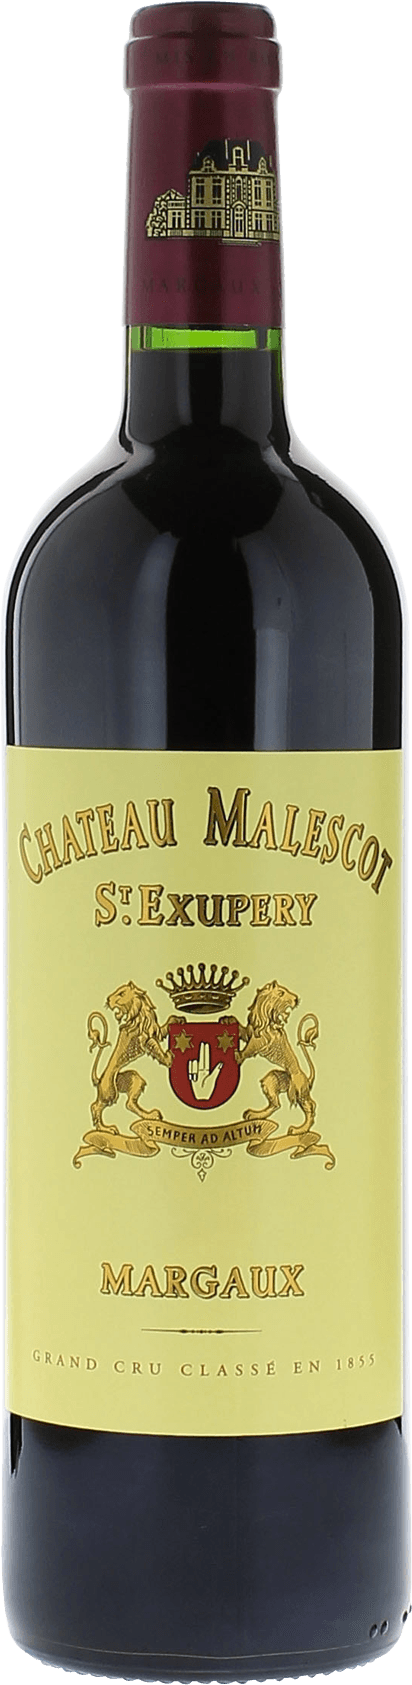 Malescot saint exupery 1998 3me Grand cru class Margaux, Bordeaux rouge